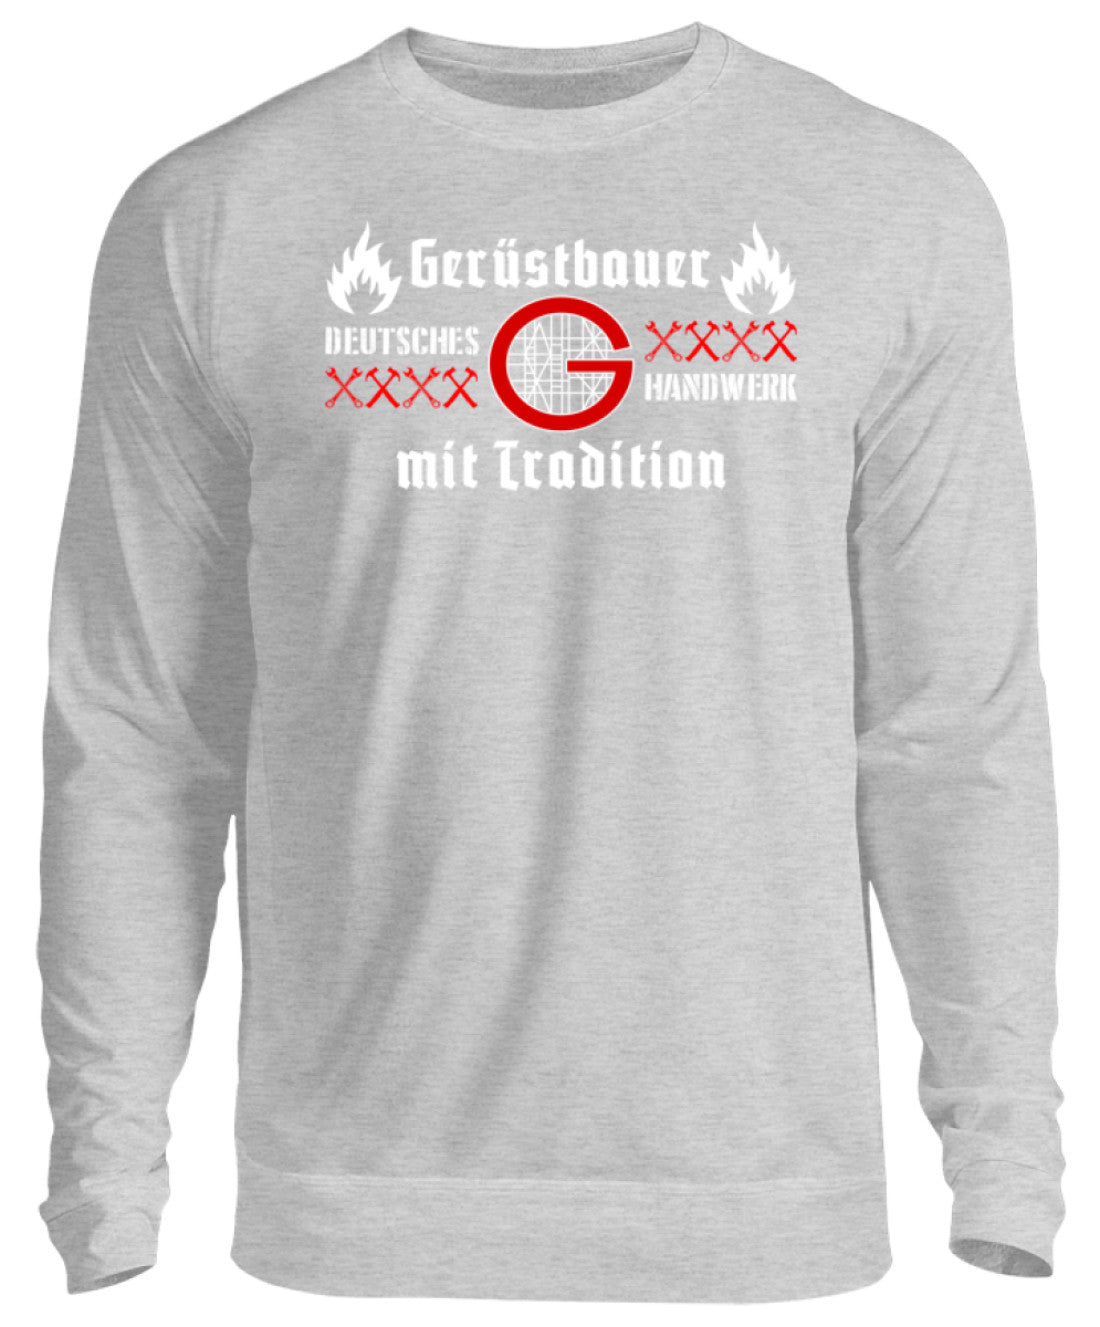 Gerüstbauer Handwerk mit Tradition  - Unisex Pullover €32.95 Gerüstbauer - Shop >>